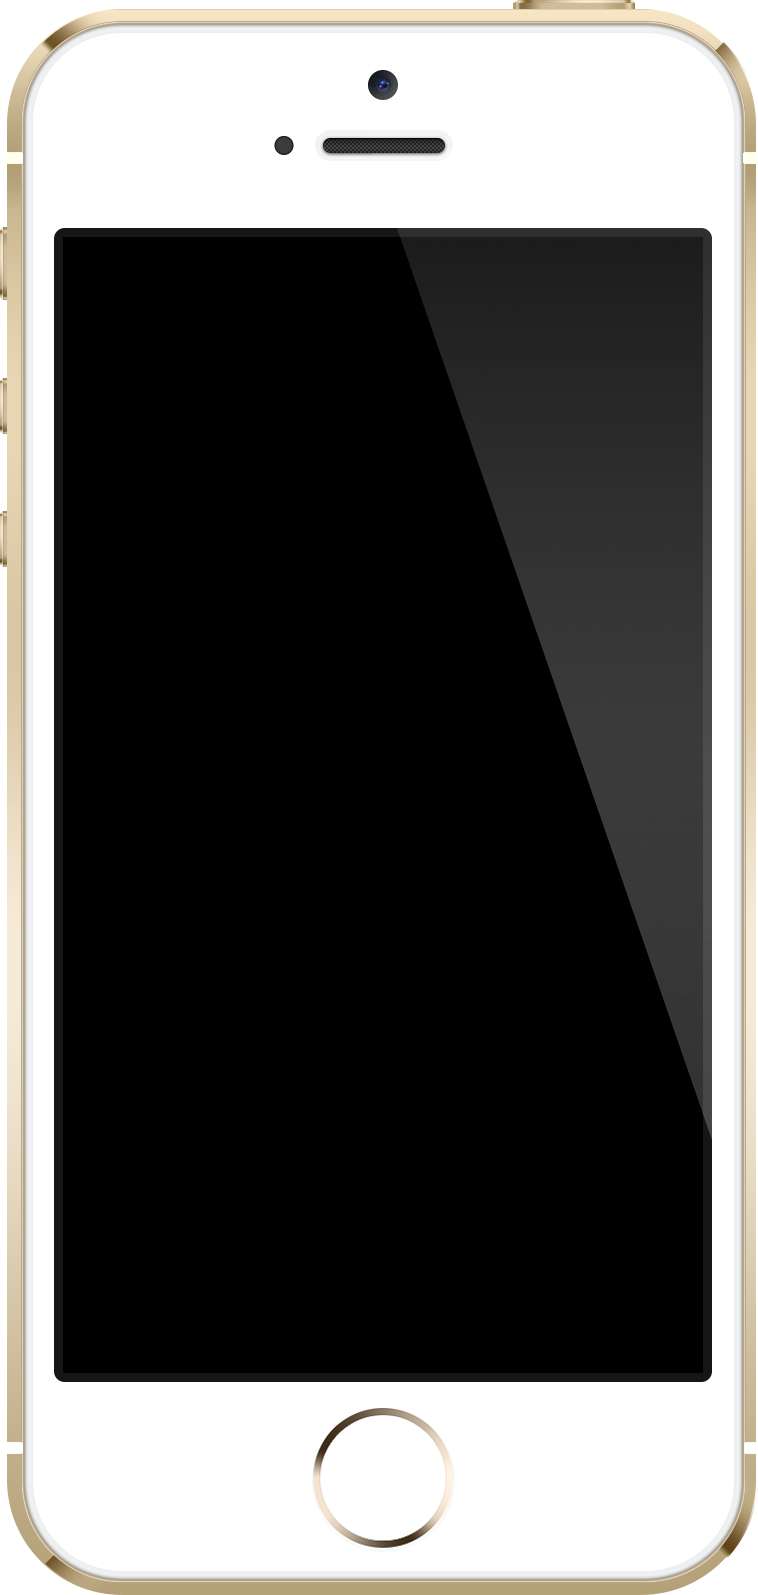 L’iPhone 5S, fleuron des smartphones d’Apple, possède un écran plat de 4 pouces de diagonale. Les modèles suivants pourraient bien être plus grands et incurvés… © Zach Vega, Wikimedia Commons, cc by sa 3.0